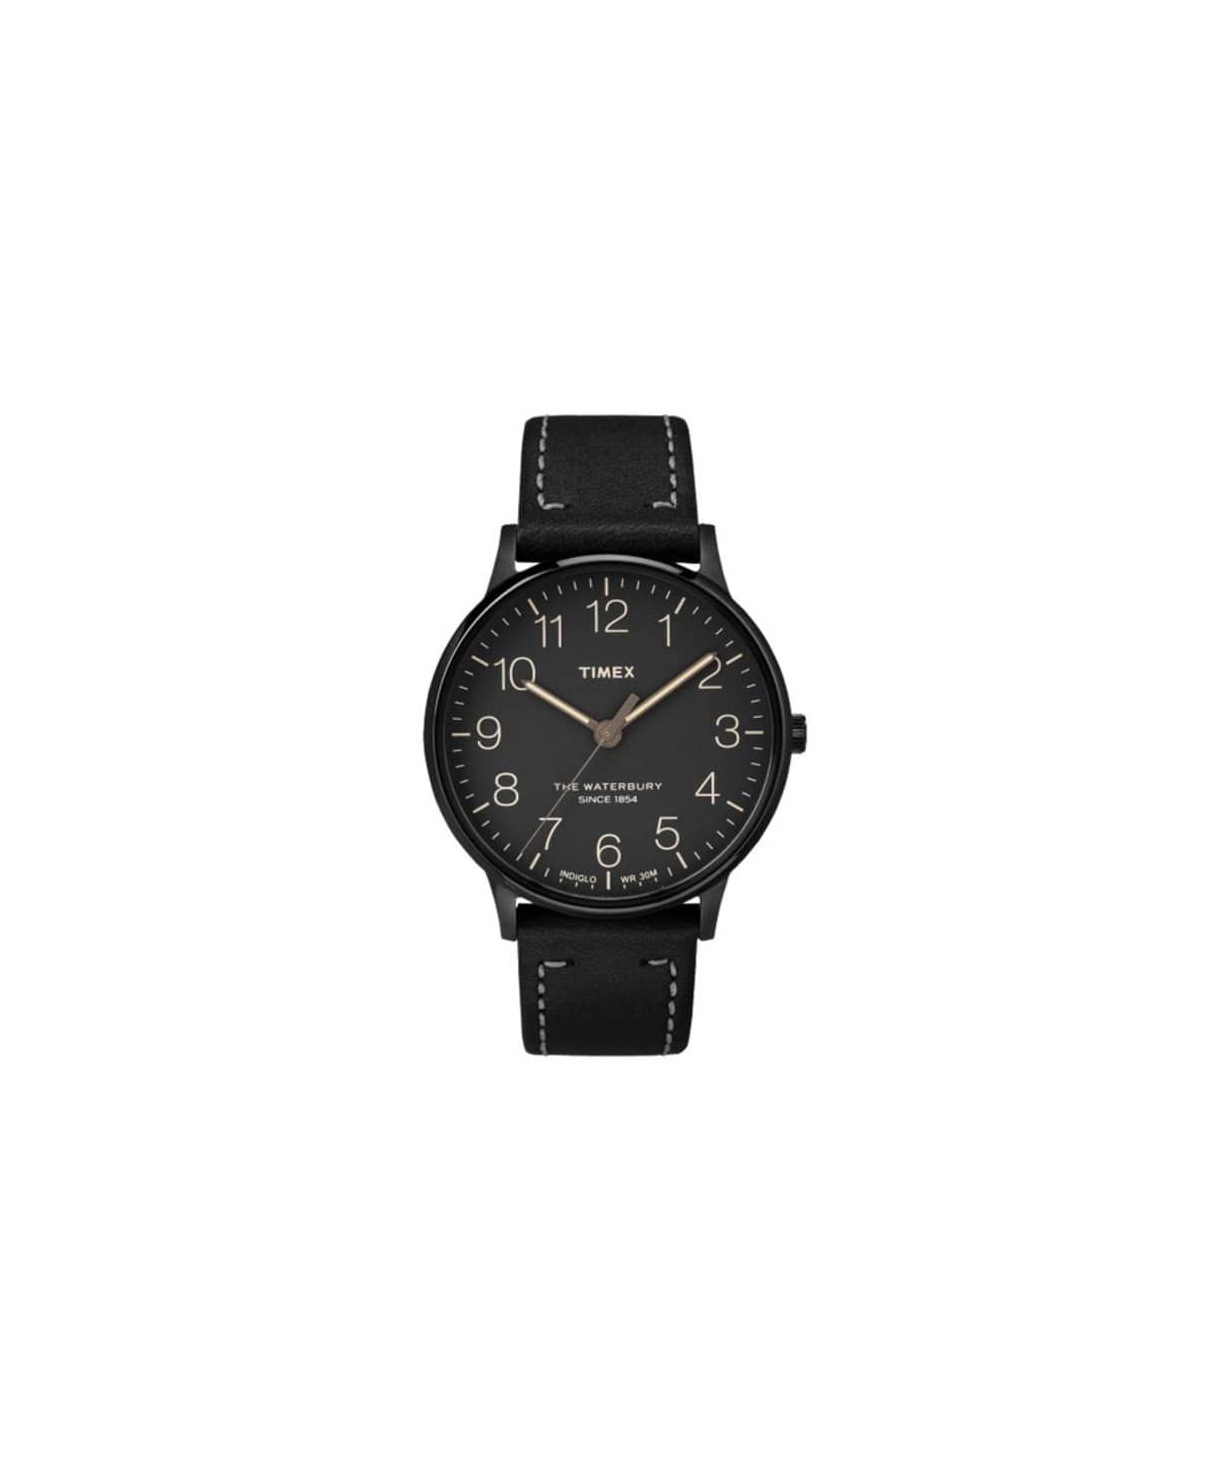 Ժամացույց «Timex» ձեռքի   TW2P95900